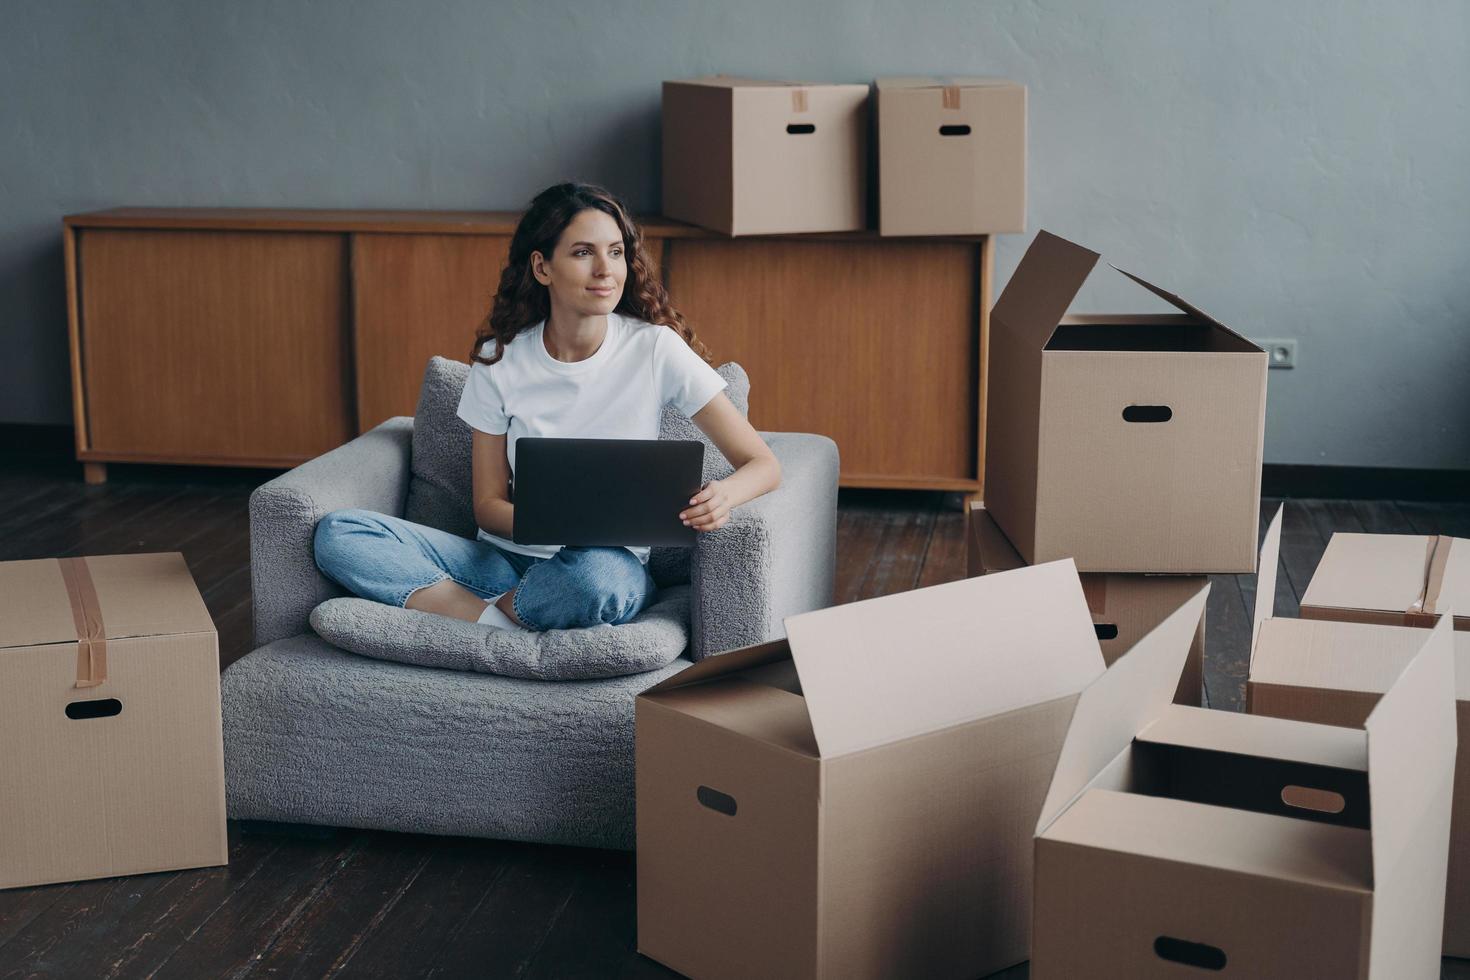 fille heureuse assise devant un ordinateur portable avec des boîtes en carton, rêvant d'une nouvelle maison, déménagement photo